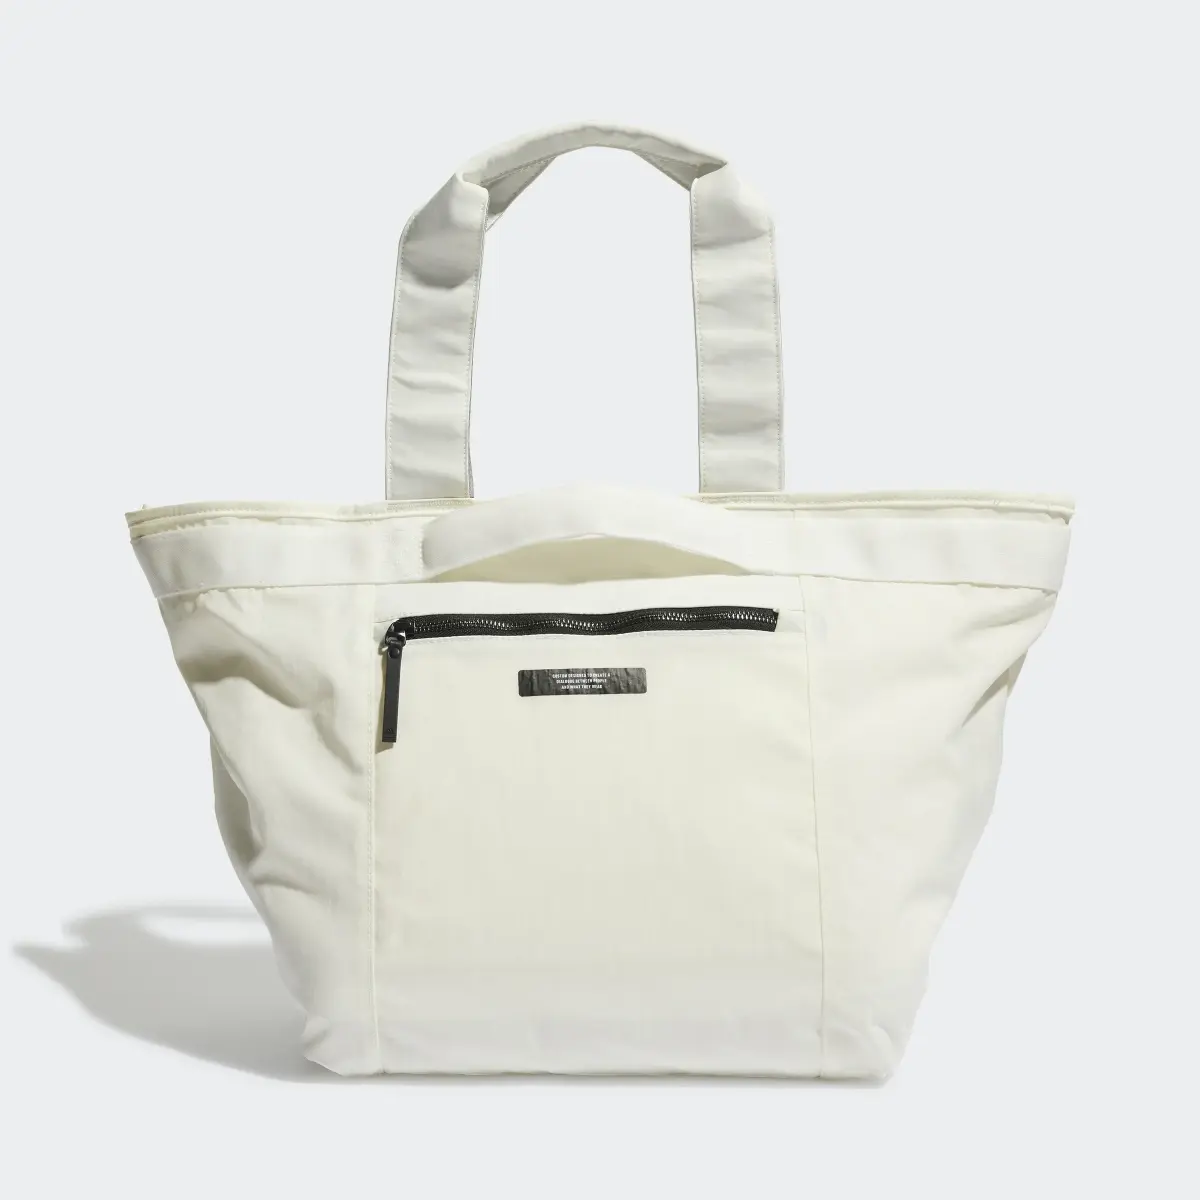 Adidas Shopper Bag. 3